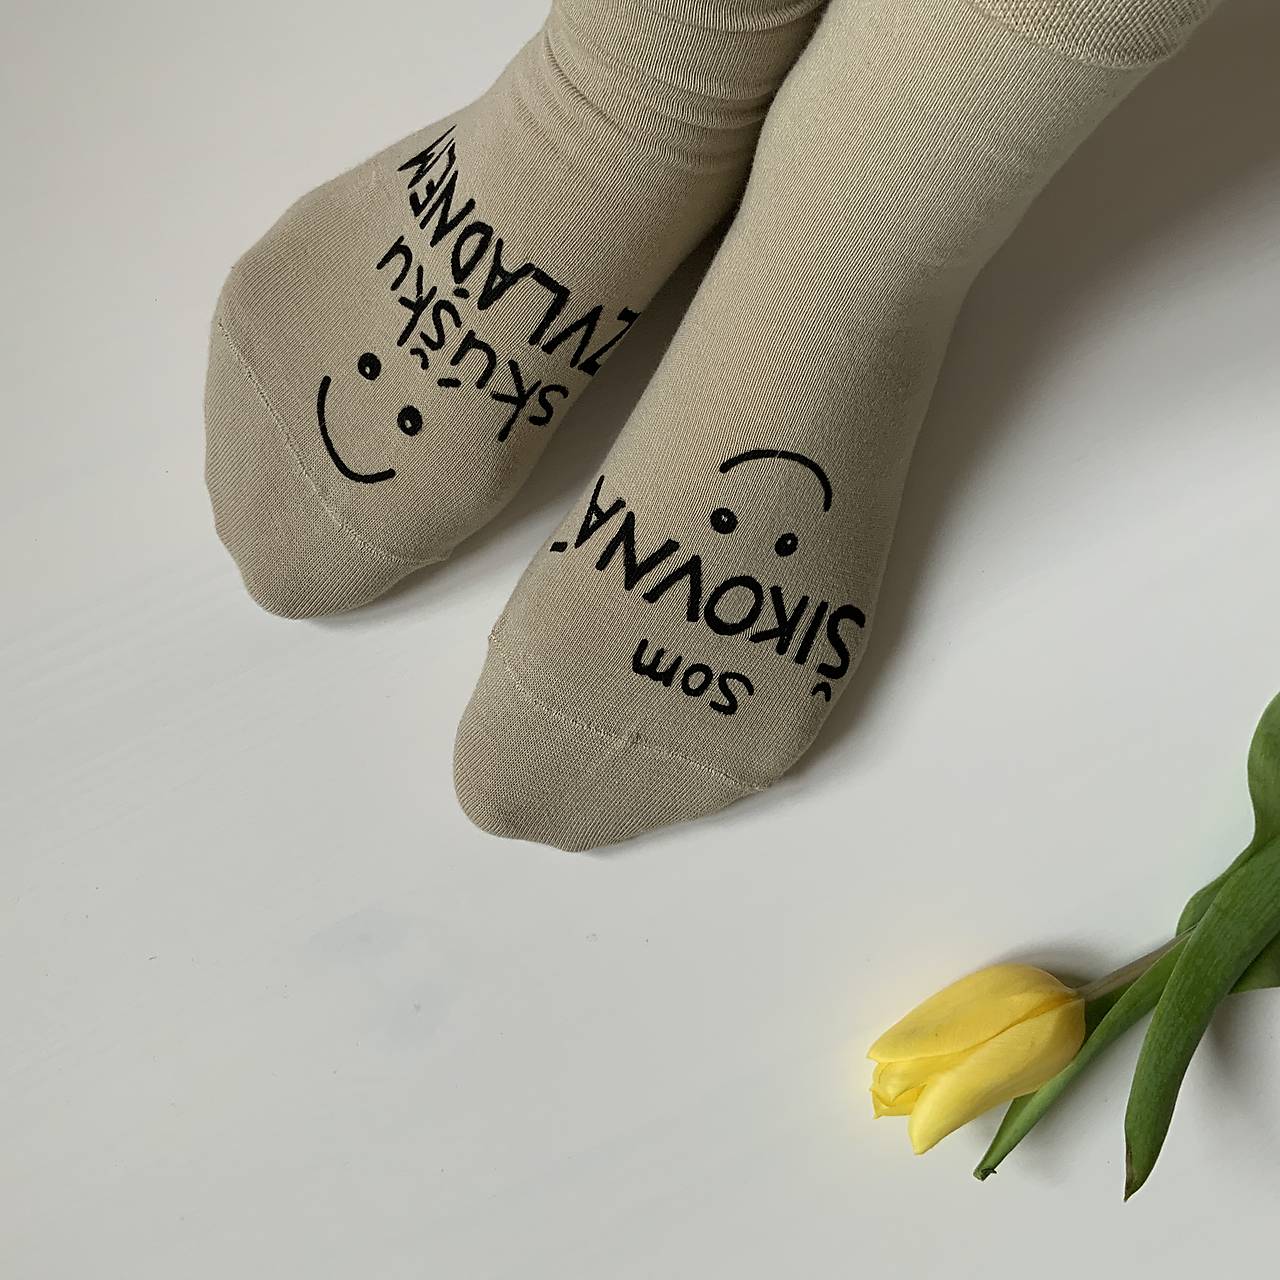 Motivačné maľované ponožky s nápisom: “Som šikovná / skúšku zvládnem”